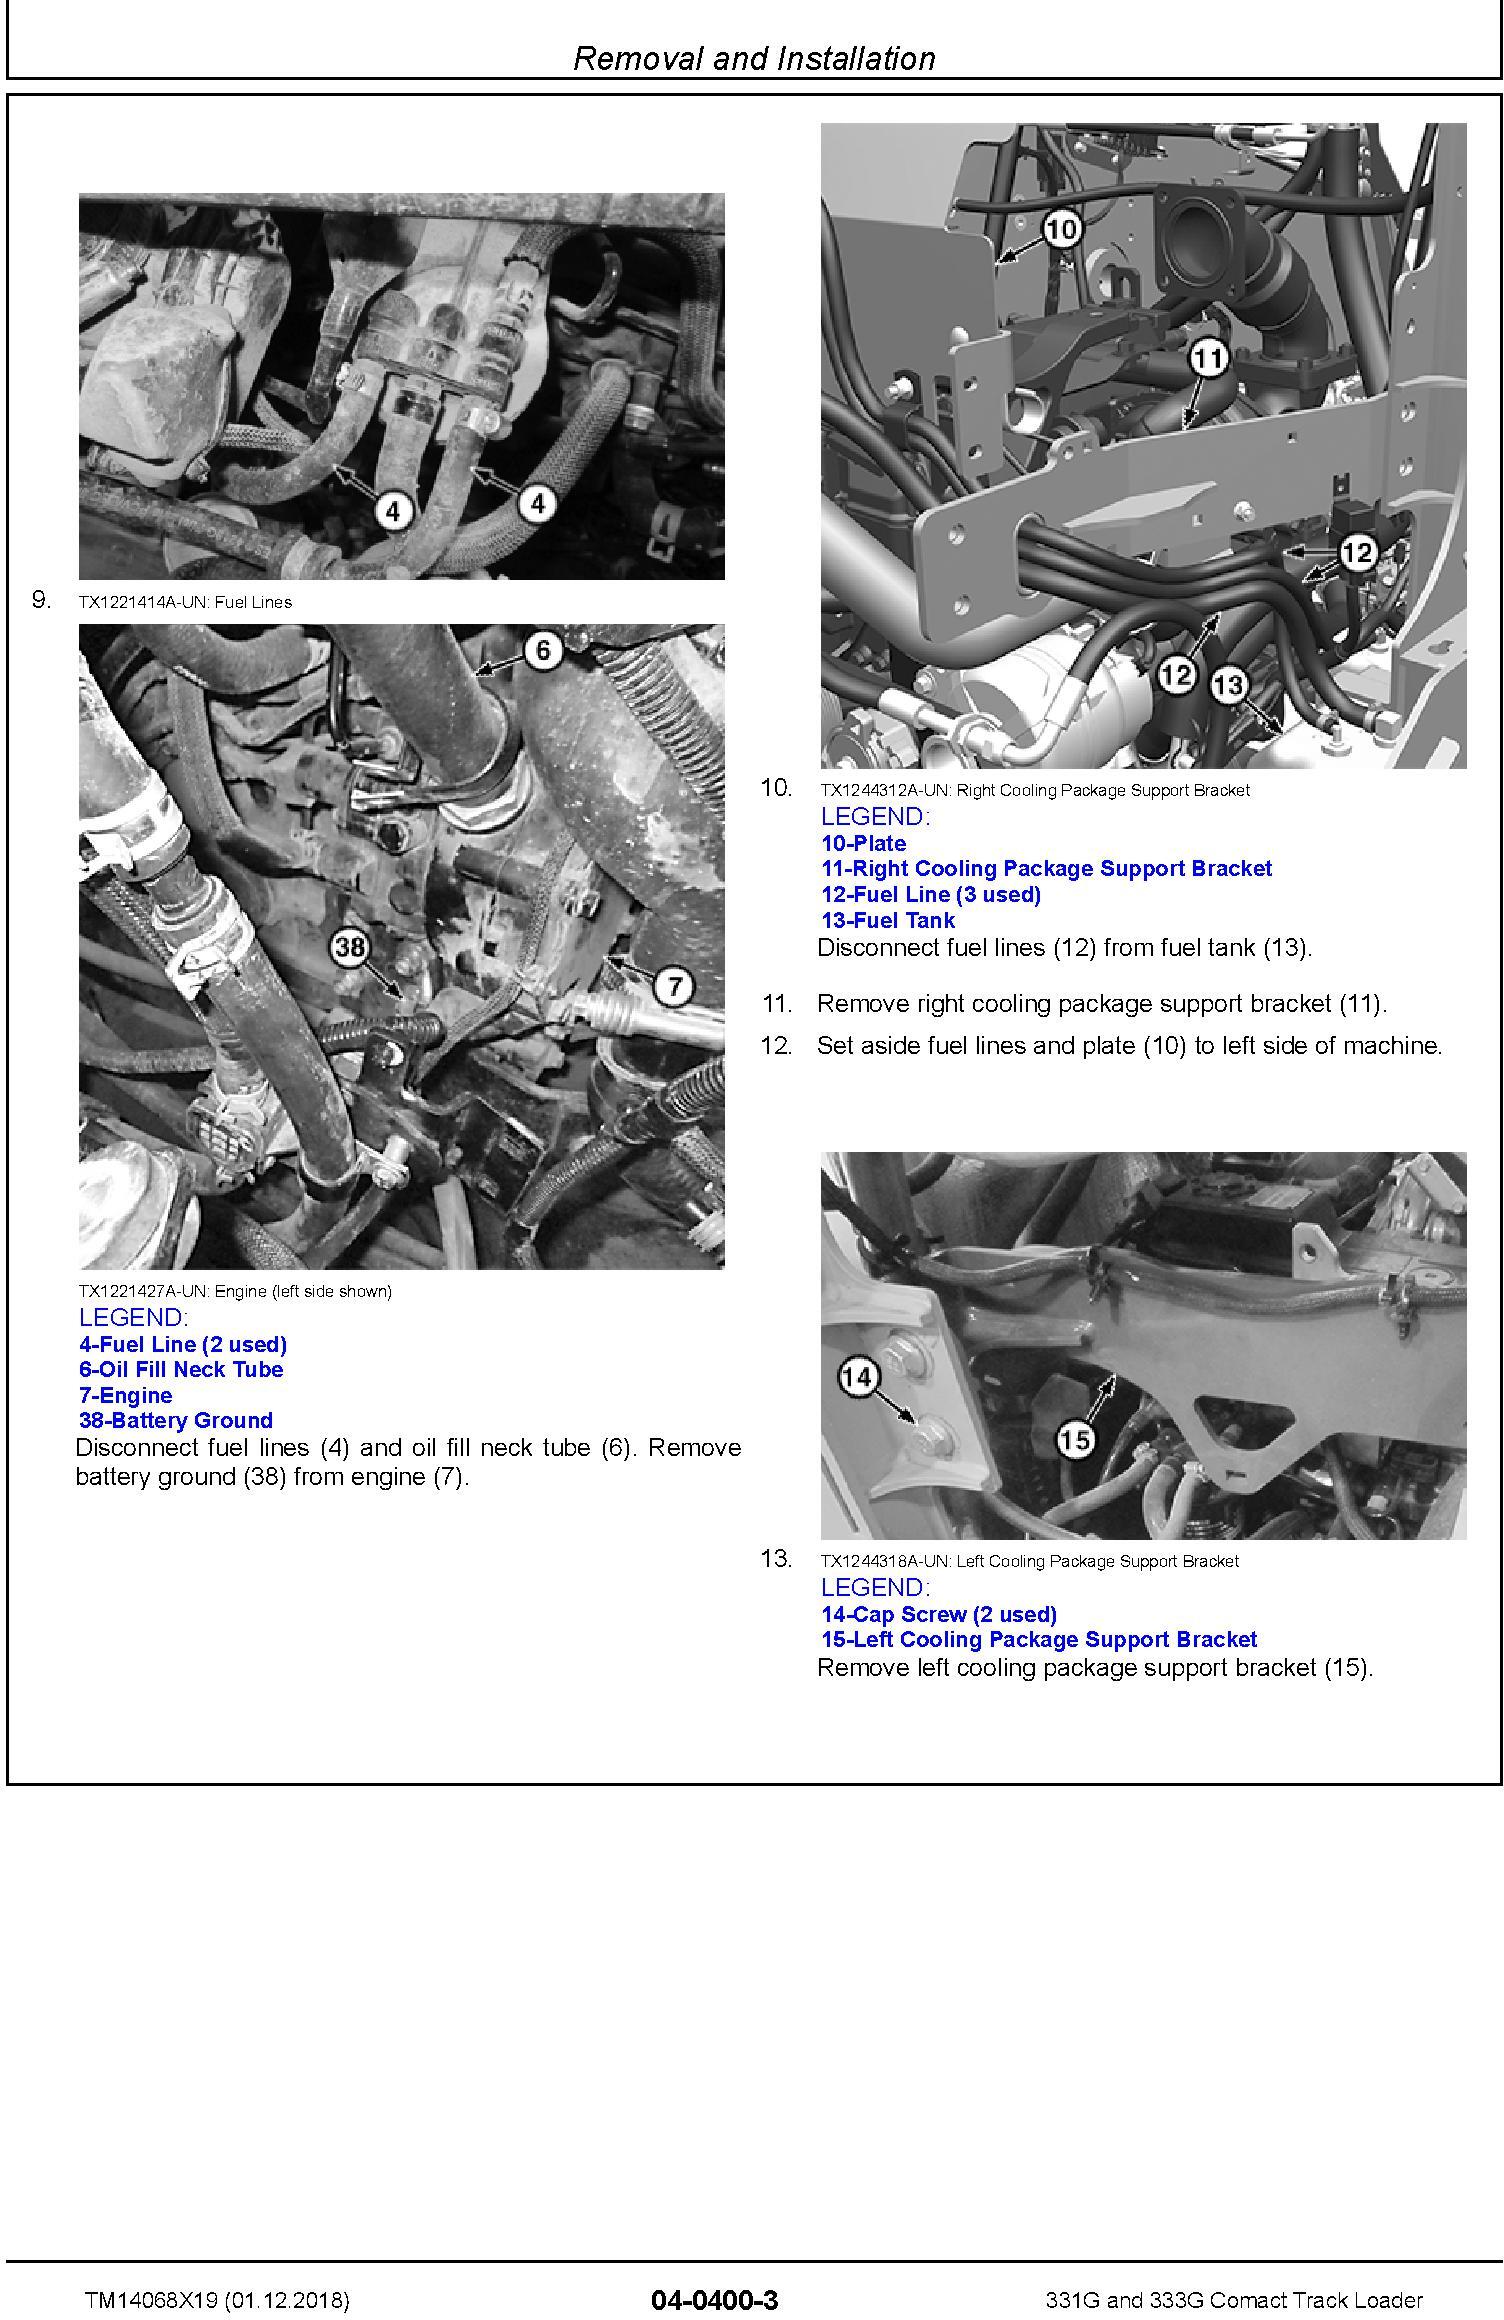 John Deere 331G and 333G Comact Track Loader Repair Service Manual (TM14068X19) - 2